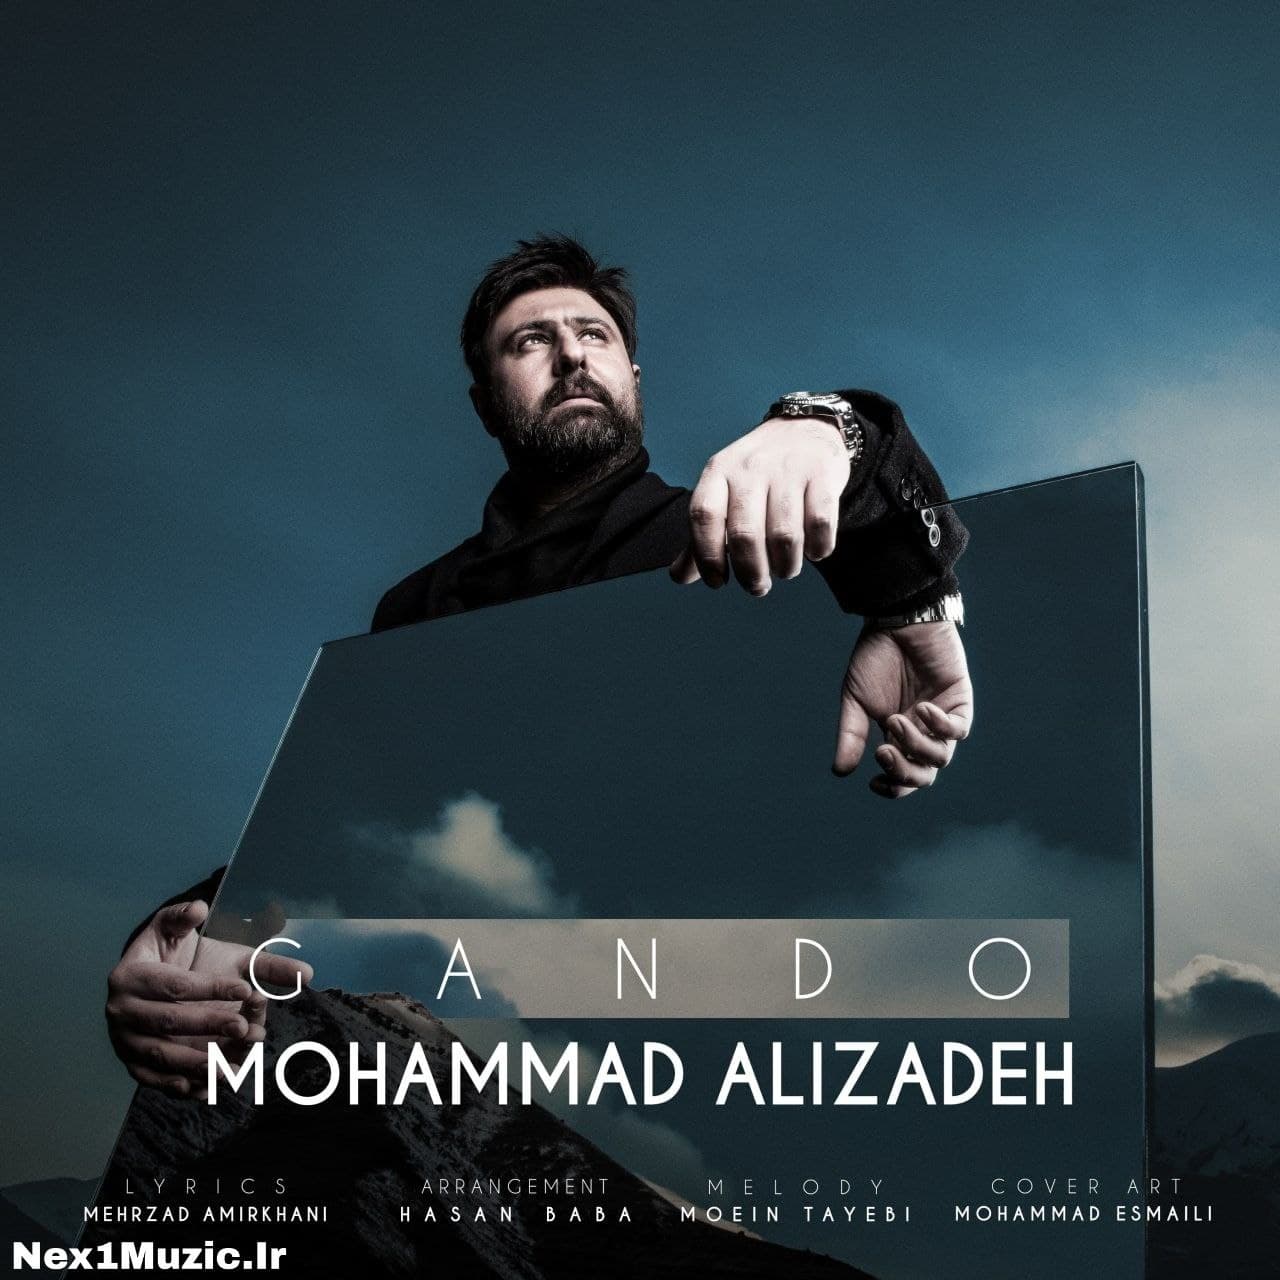 آهنگِ جدید و زیبایِ محمد علیزاده به نامِ «گاندو»